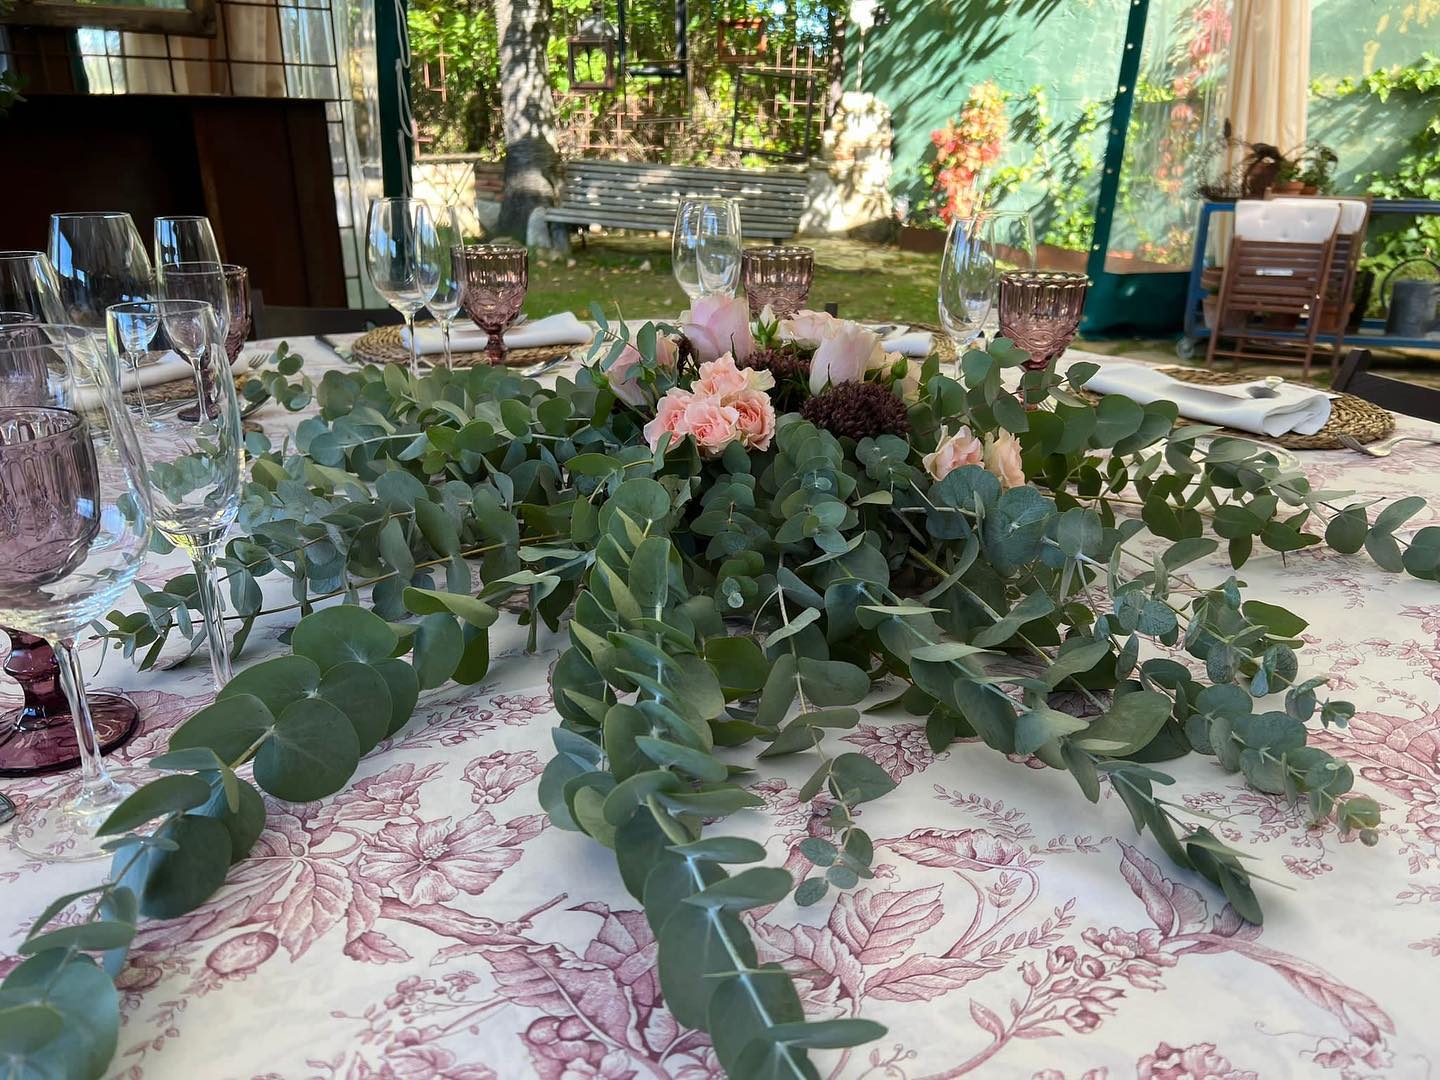 La boda del finde anterior en @fincalasierra con @mucha_miga
Brutales centros de mesa gigantes. Siempre es un placer trabajar con @nonia_villa.